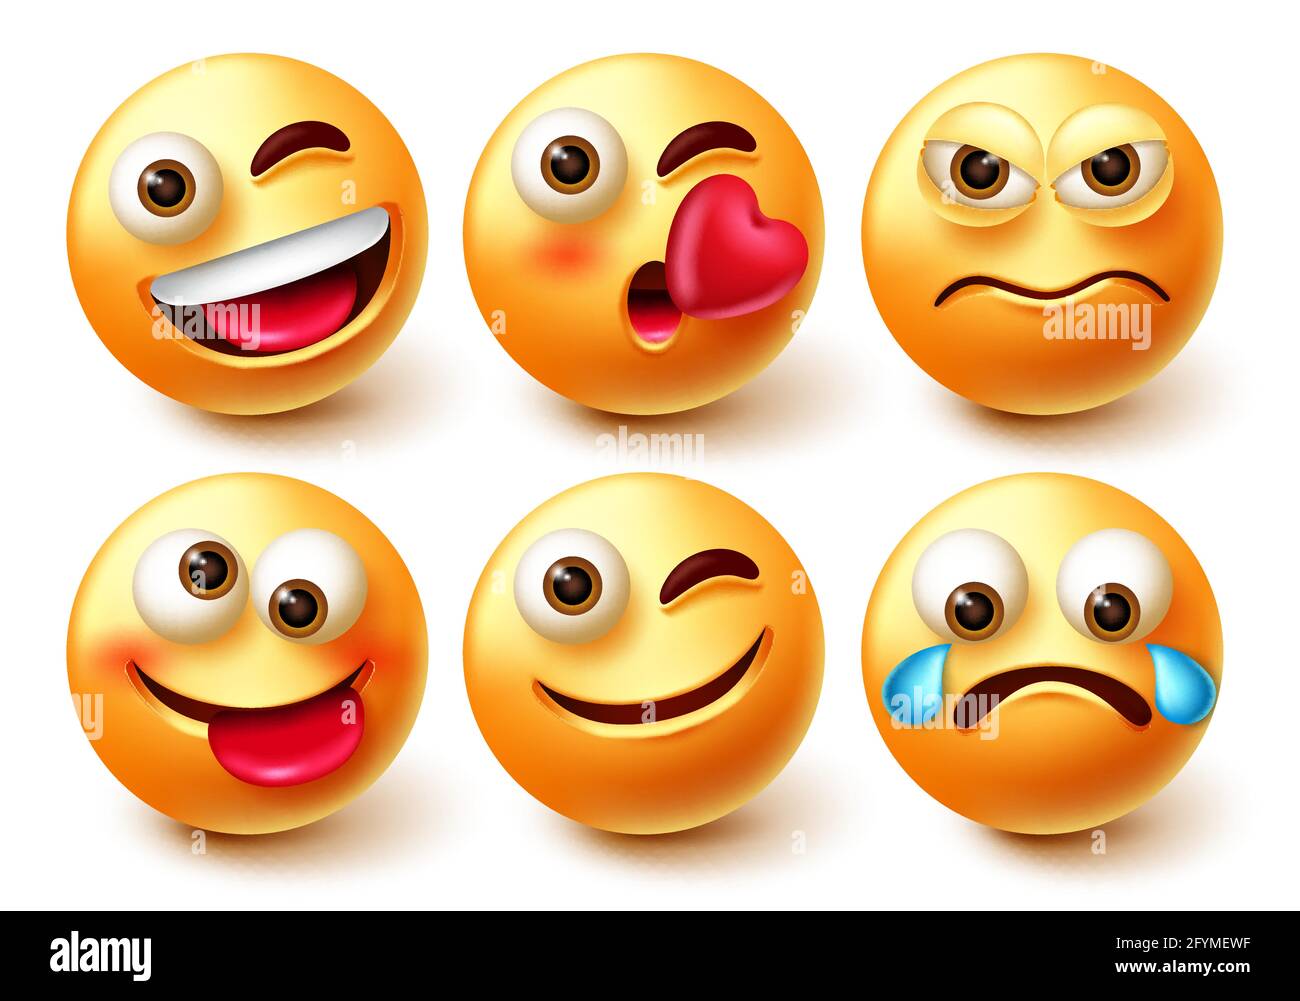 Emoticon Smiley-Vektor-Zeichensatz. Emoji Smileys 3d-Charaktere mit Mimik glücklich, wütend, weinend und zwinkend isoliert. Stock Vektor